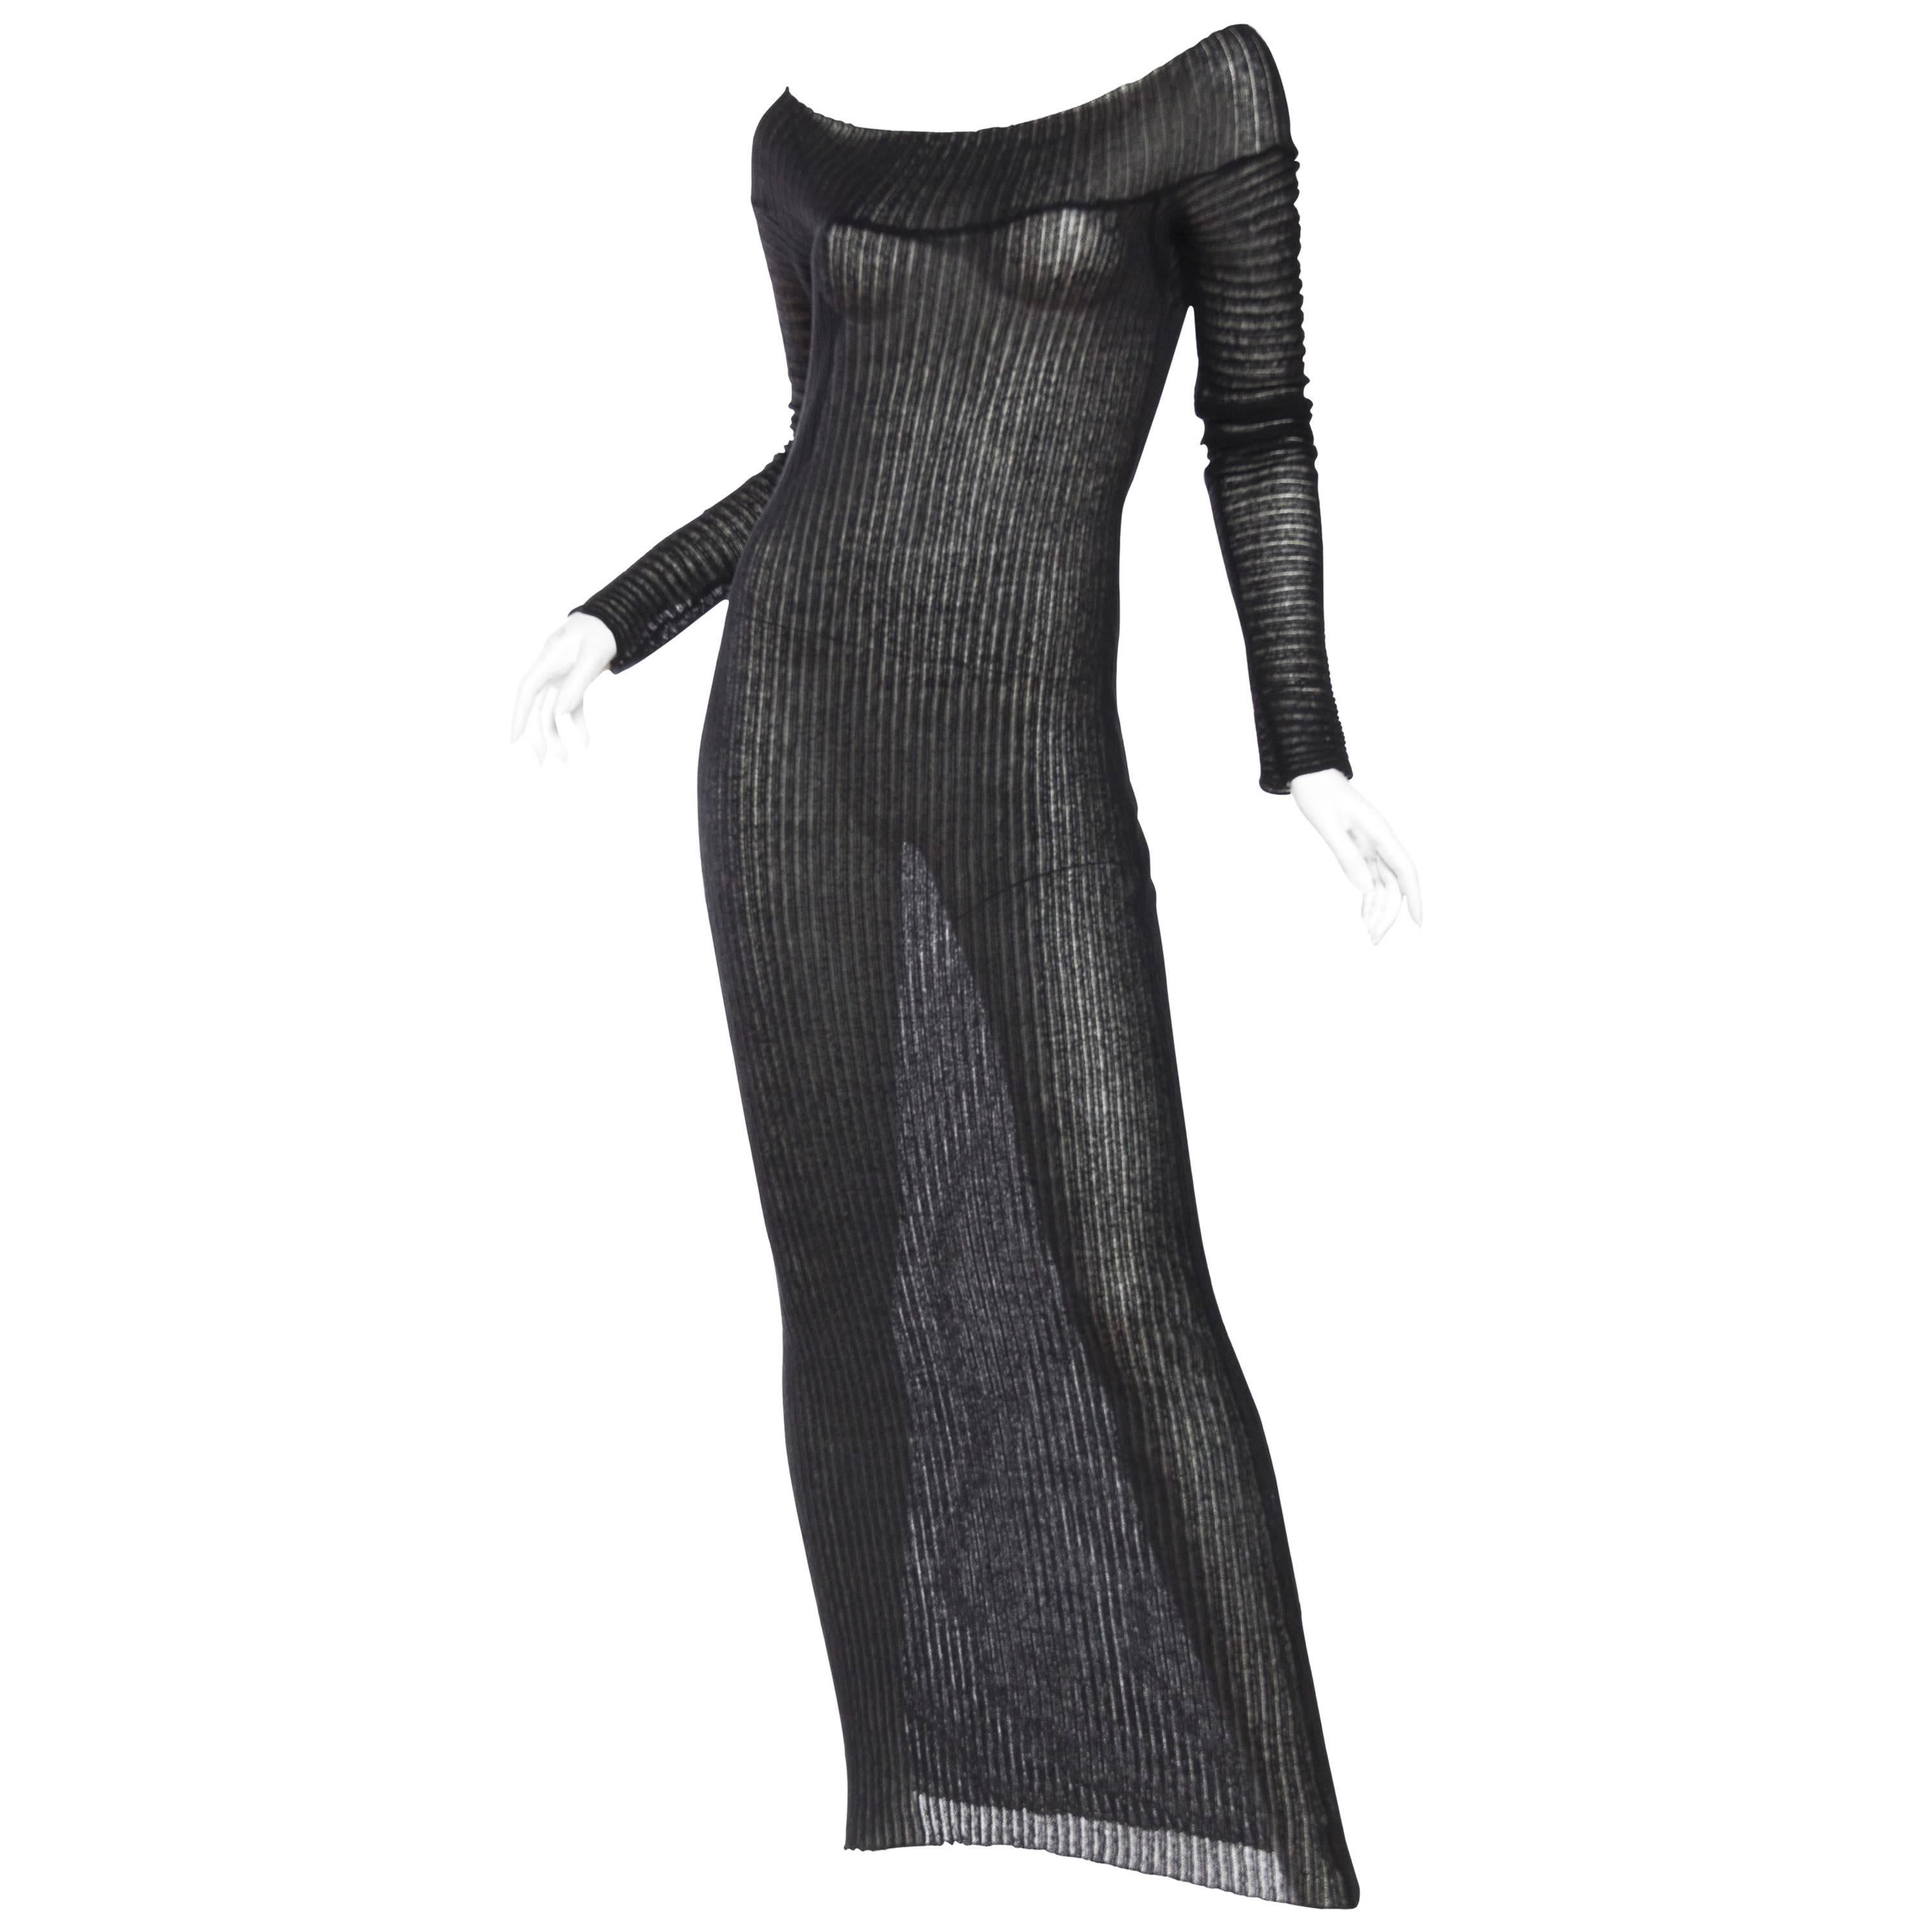 Sheer Knit Dress by Jean Paul Gaultier